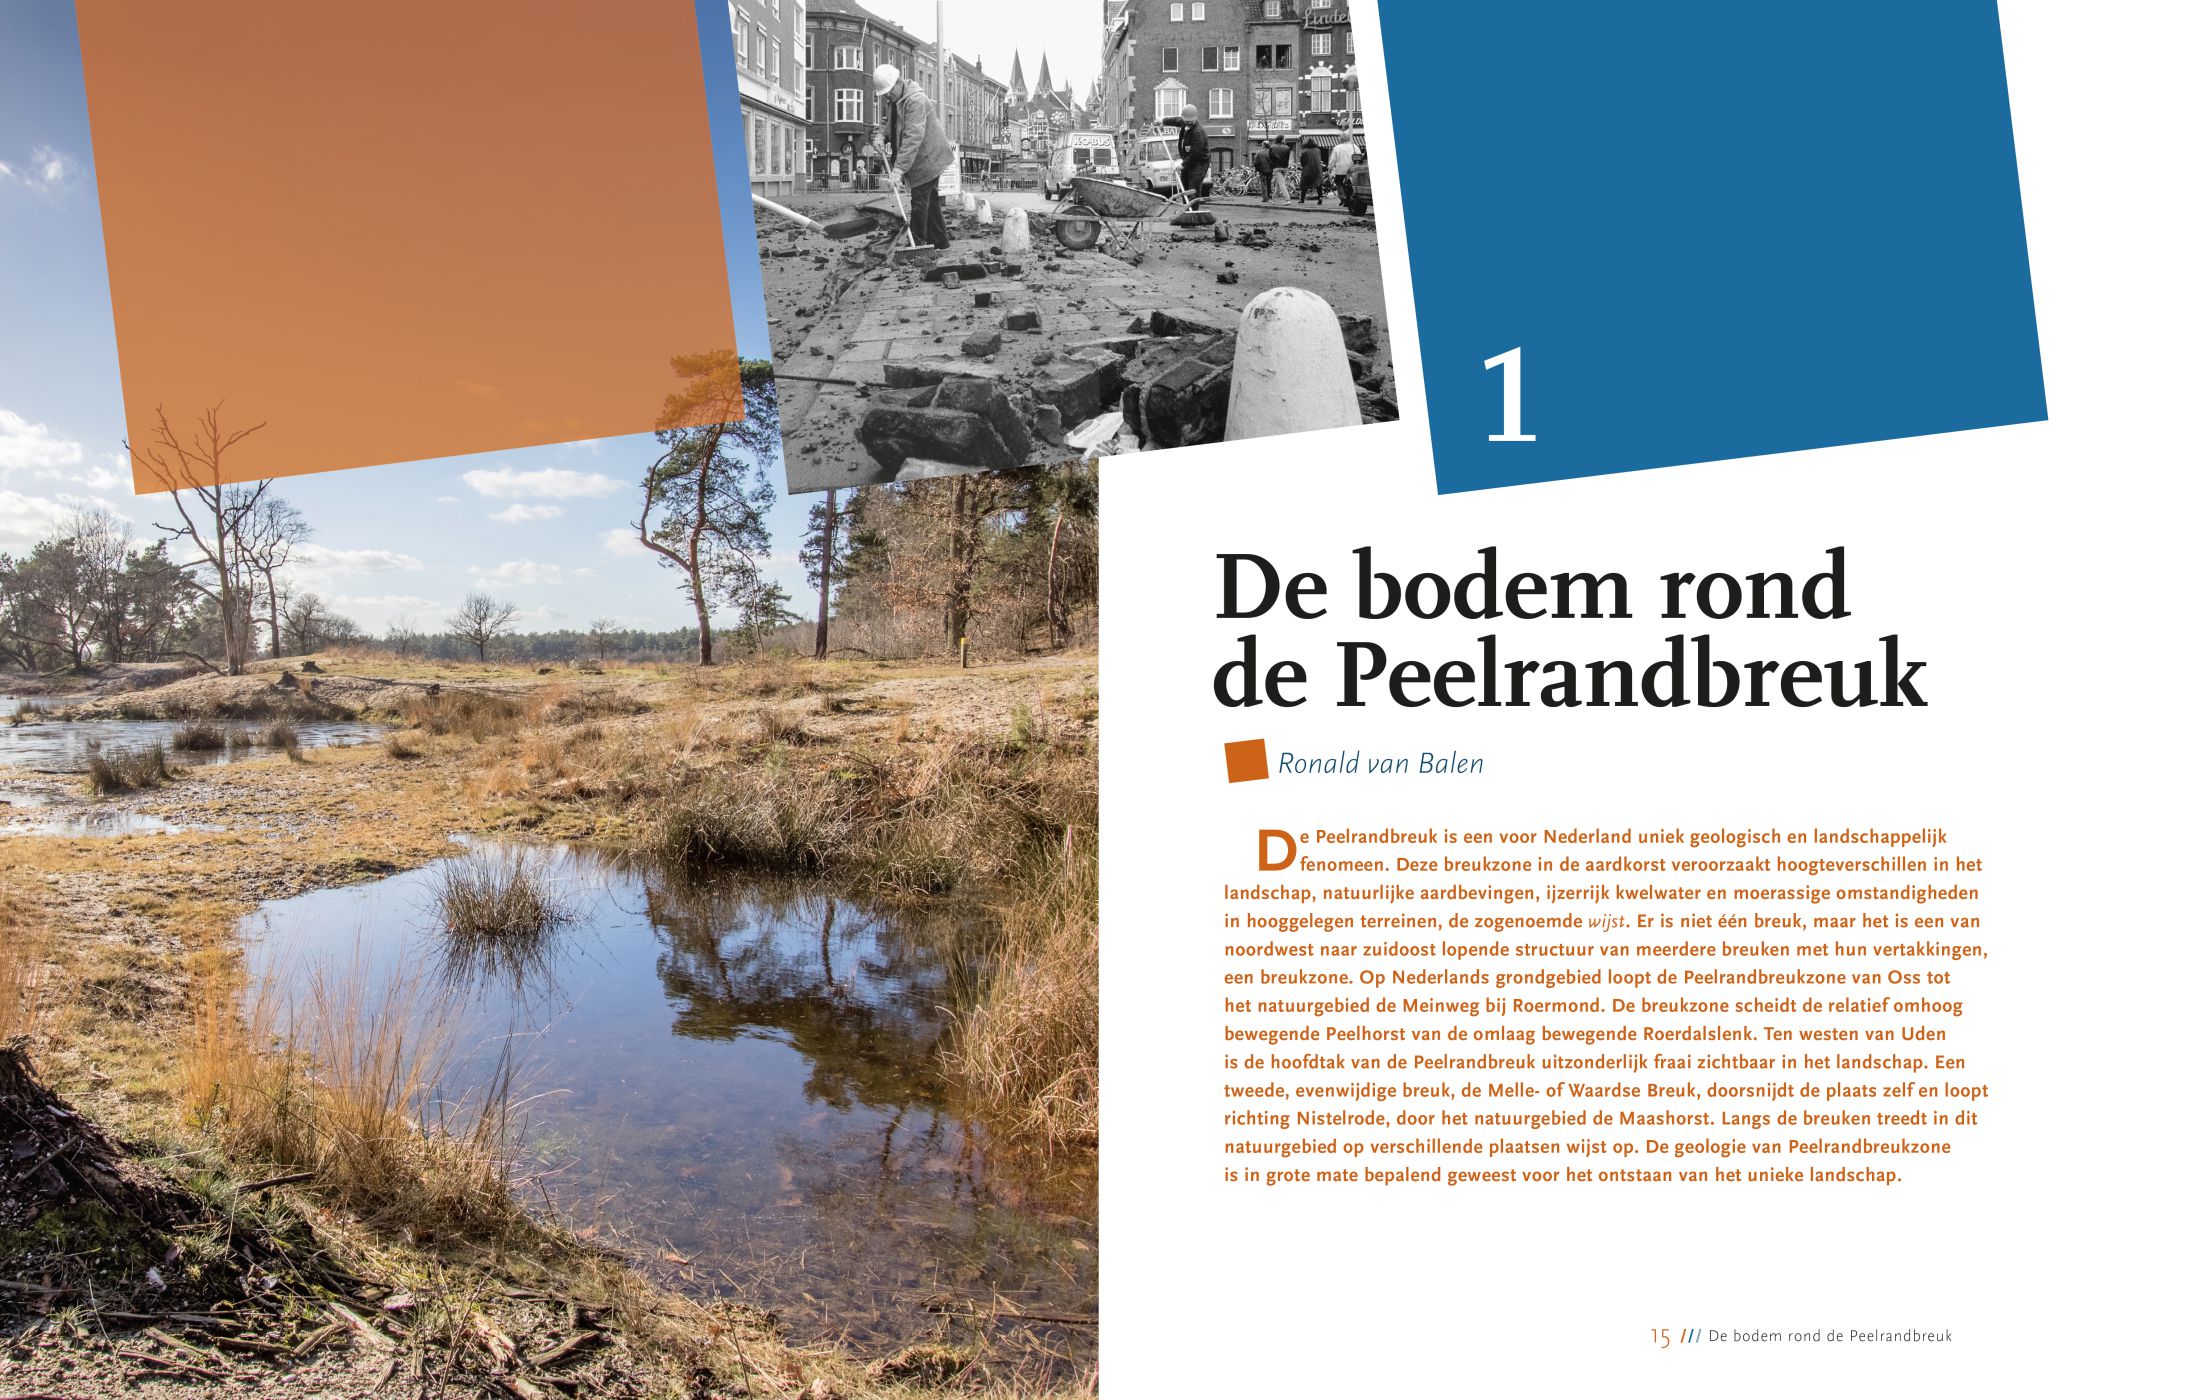 Inkijkexemplaar van het boek: <em>Breuken in het land van Peel en Maas</em> - © Uitgeverij Matrijs